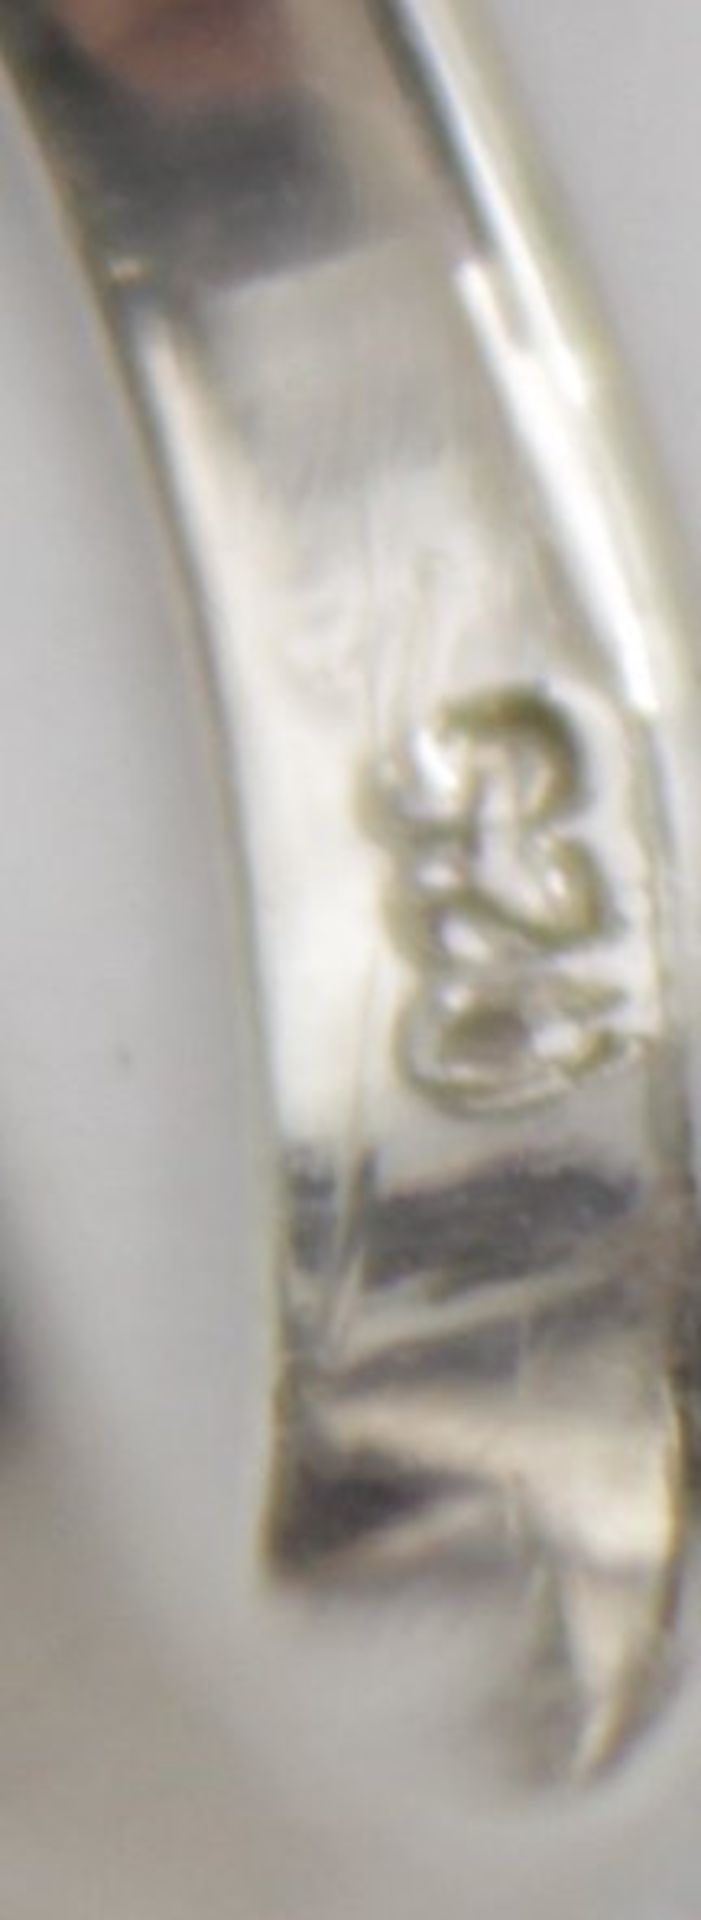 925er Silber-Ring mit Bernstein, 3,5gr., RG 58 - Bild 5 aus 5